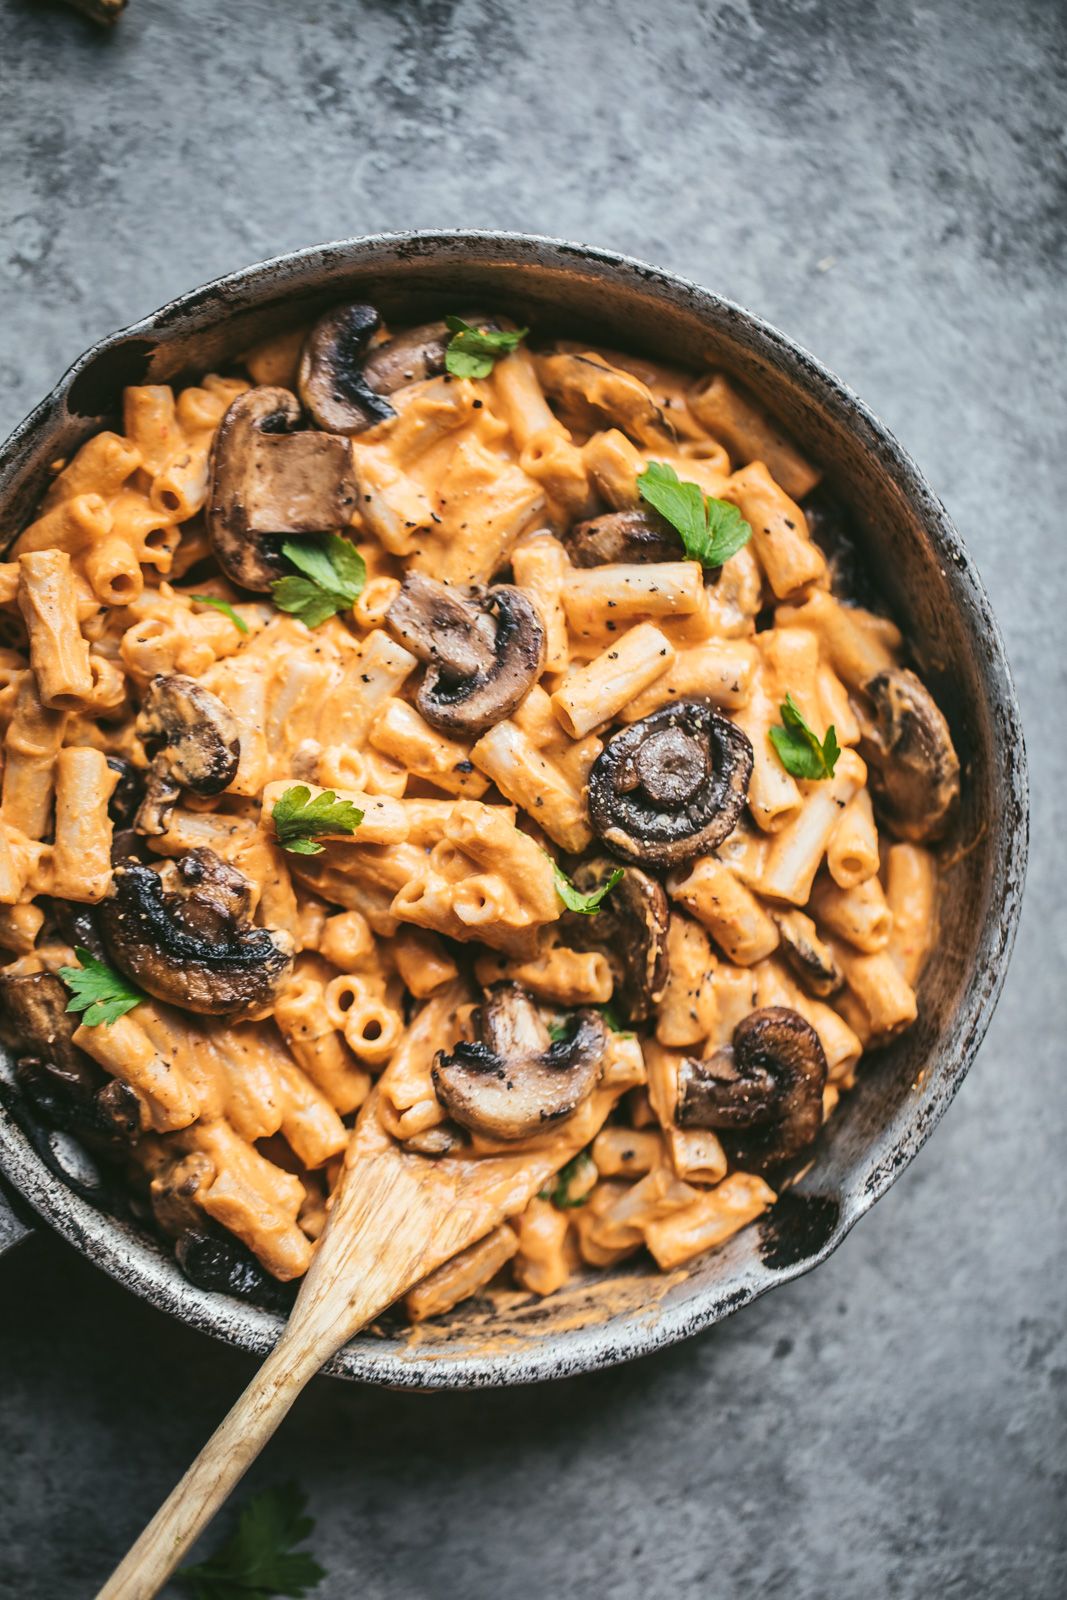 Top 36+ imagen easy pasta dinner recipes for family